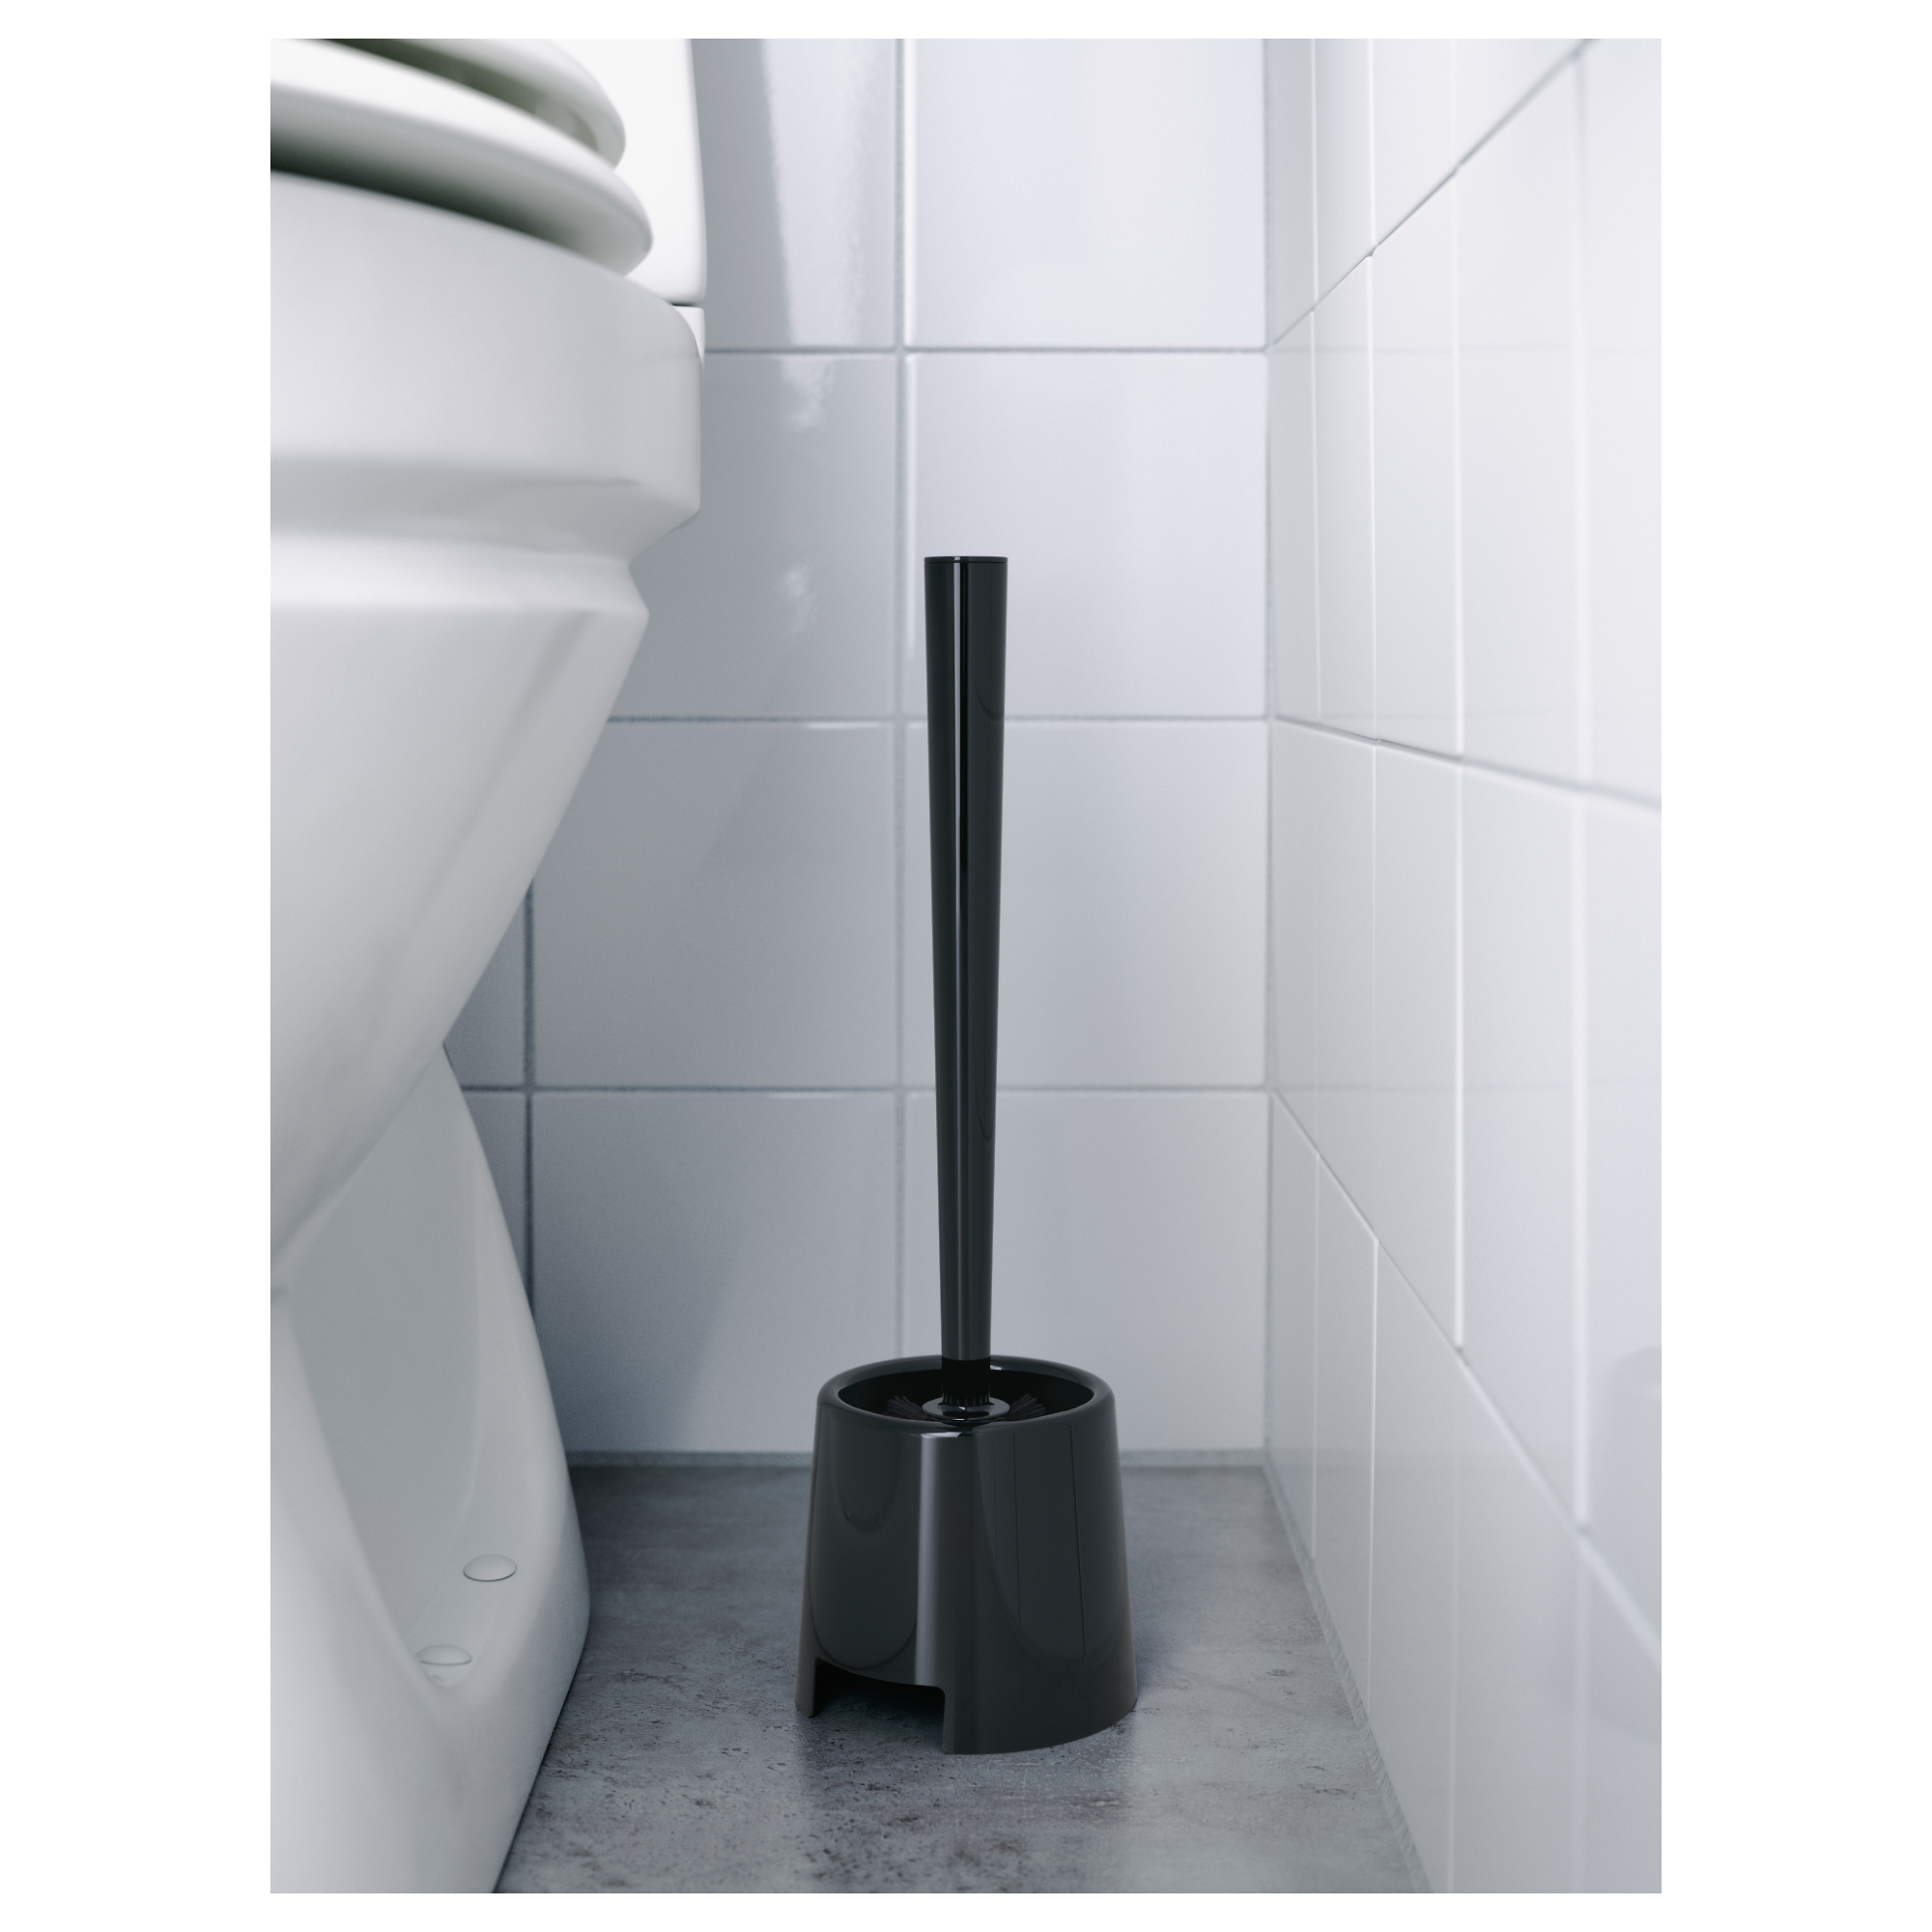 BOLMEN toilet brush/holder